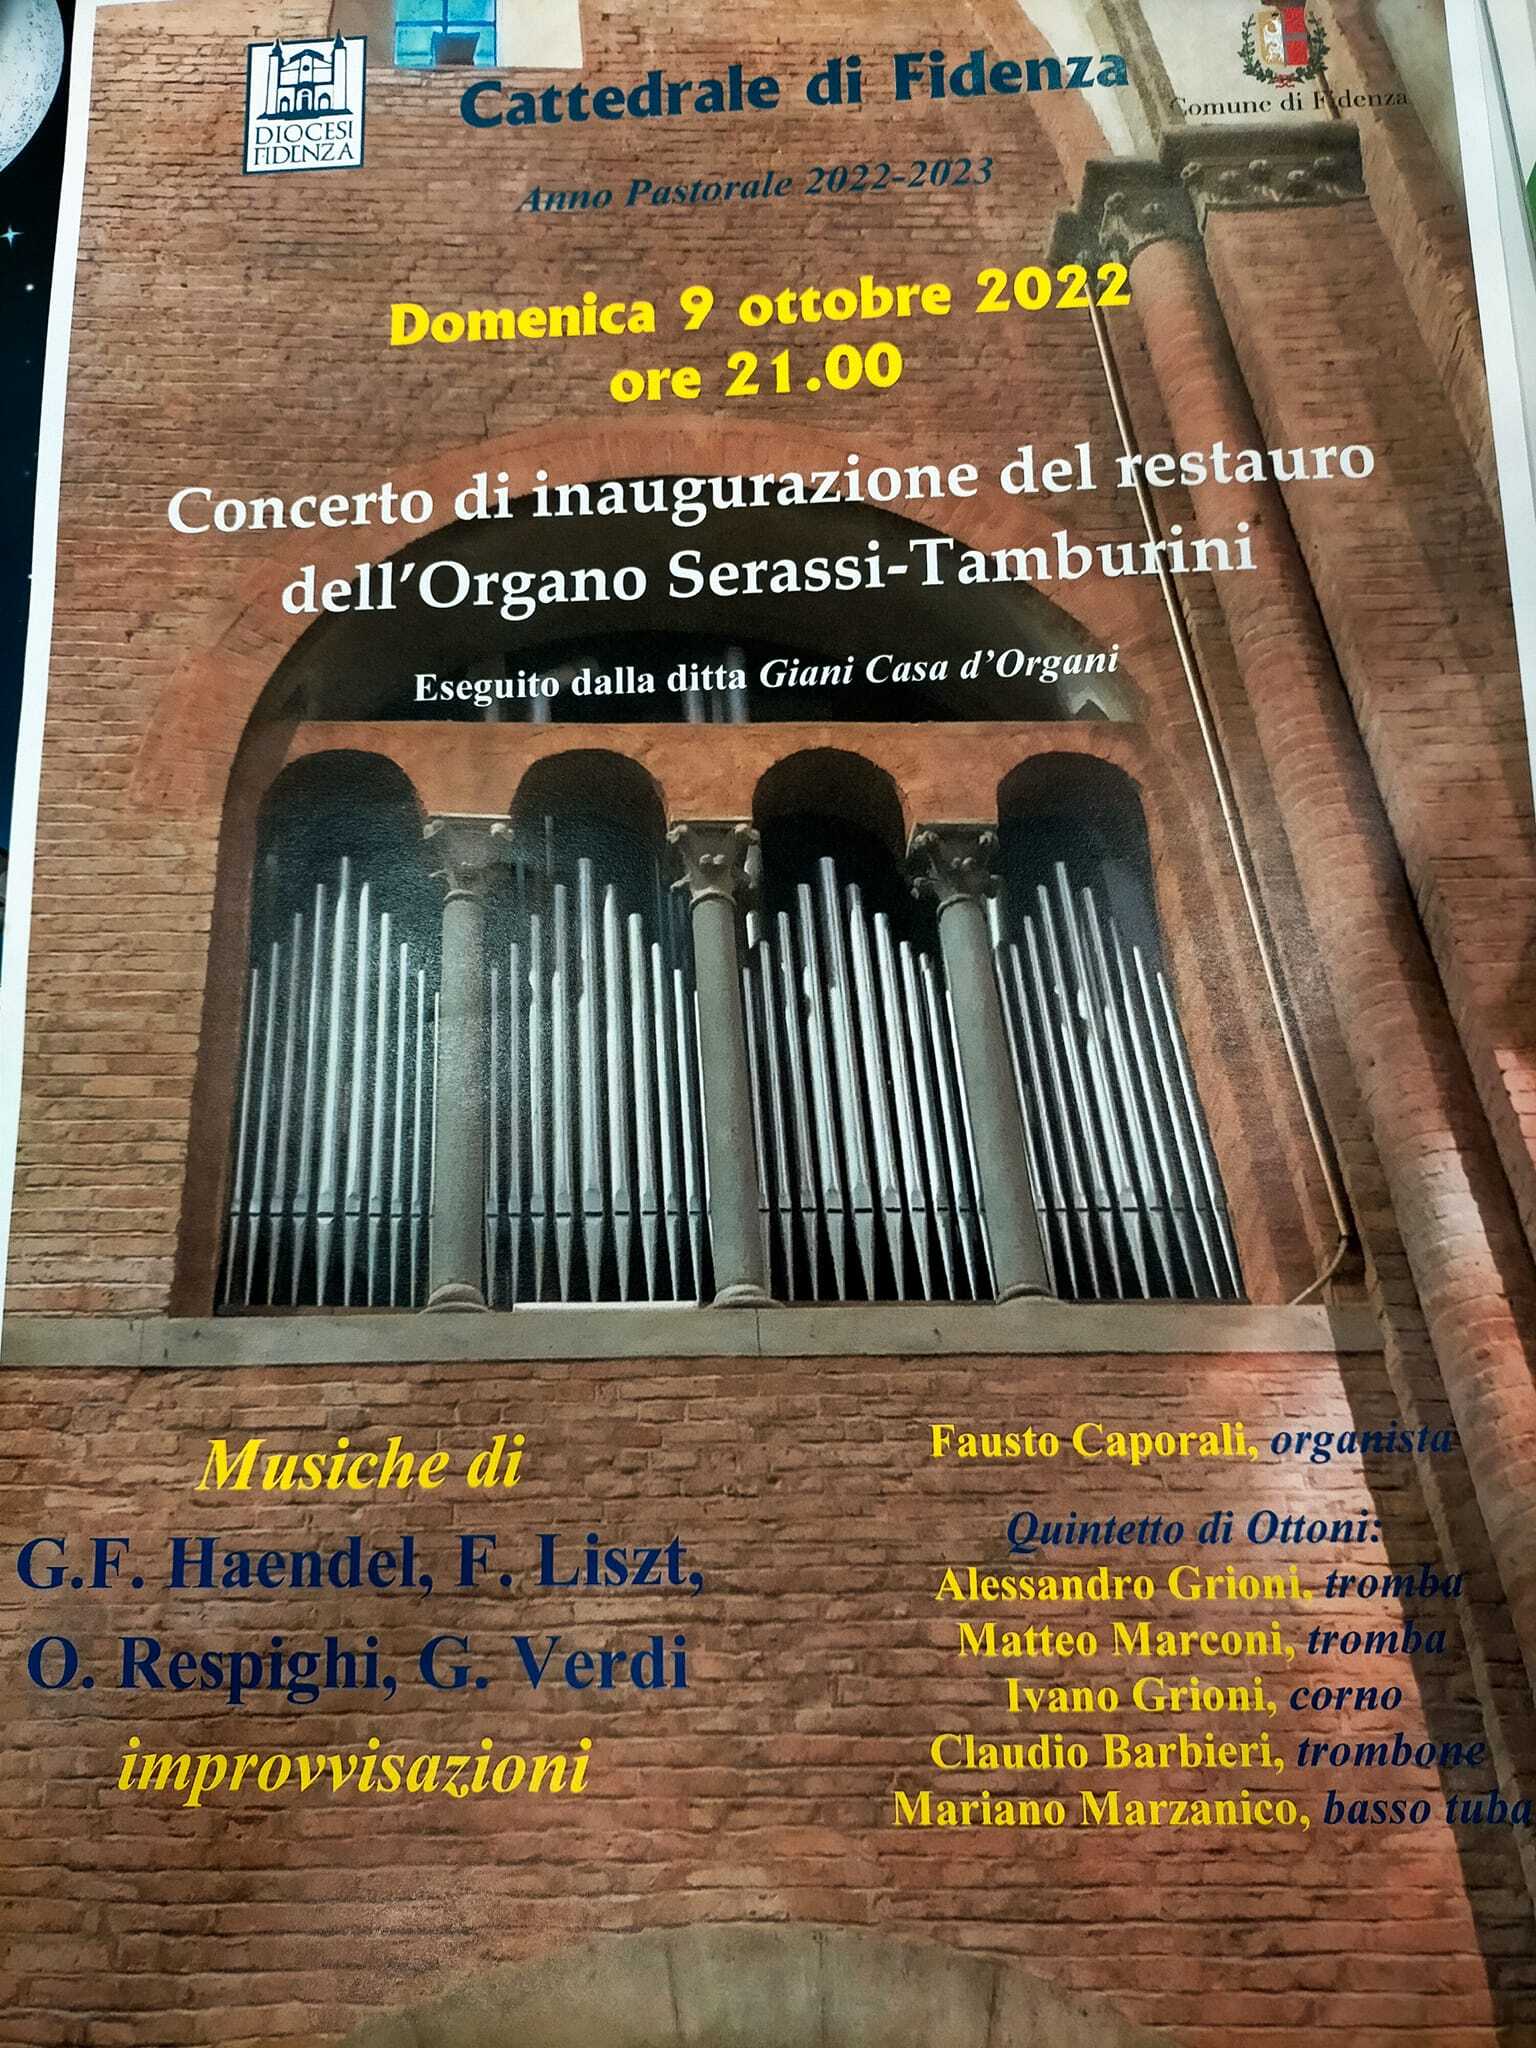 Concerto d'inaugurazione del restauro dell'organo Serassi Tamburini in Duomo